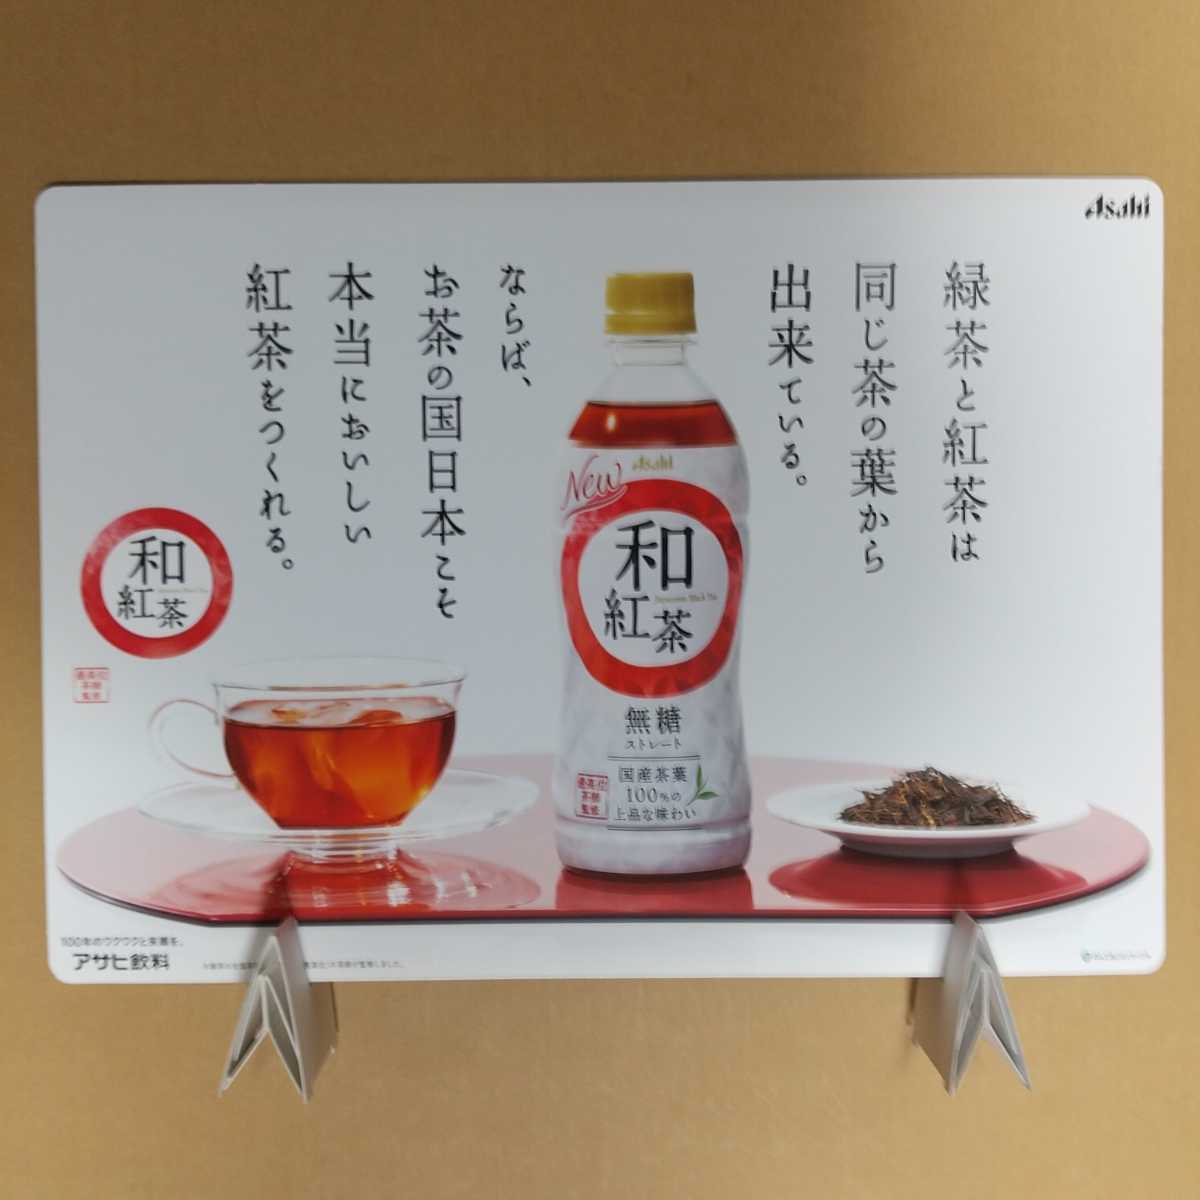  не продается популярный человек запад . 7 . панель pop panel двусторонний печать мир черный чай Asahi напиток ножек шт. имеется не использовался 